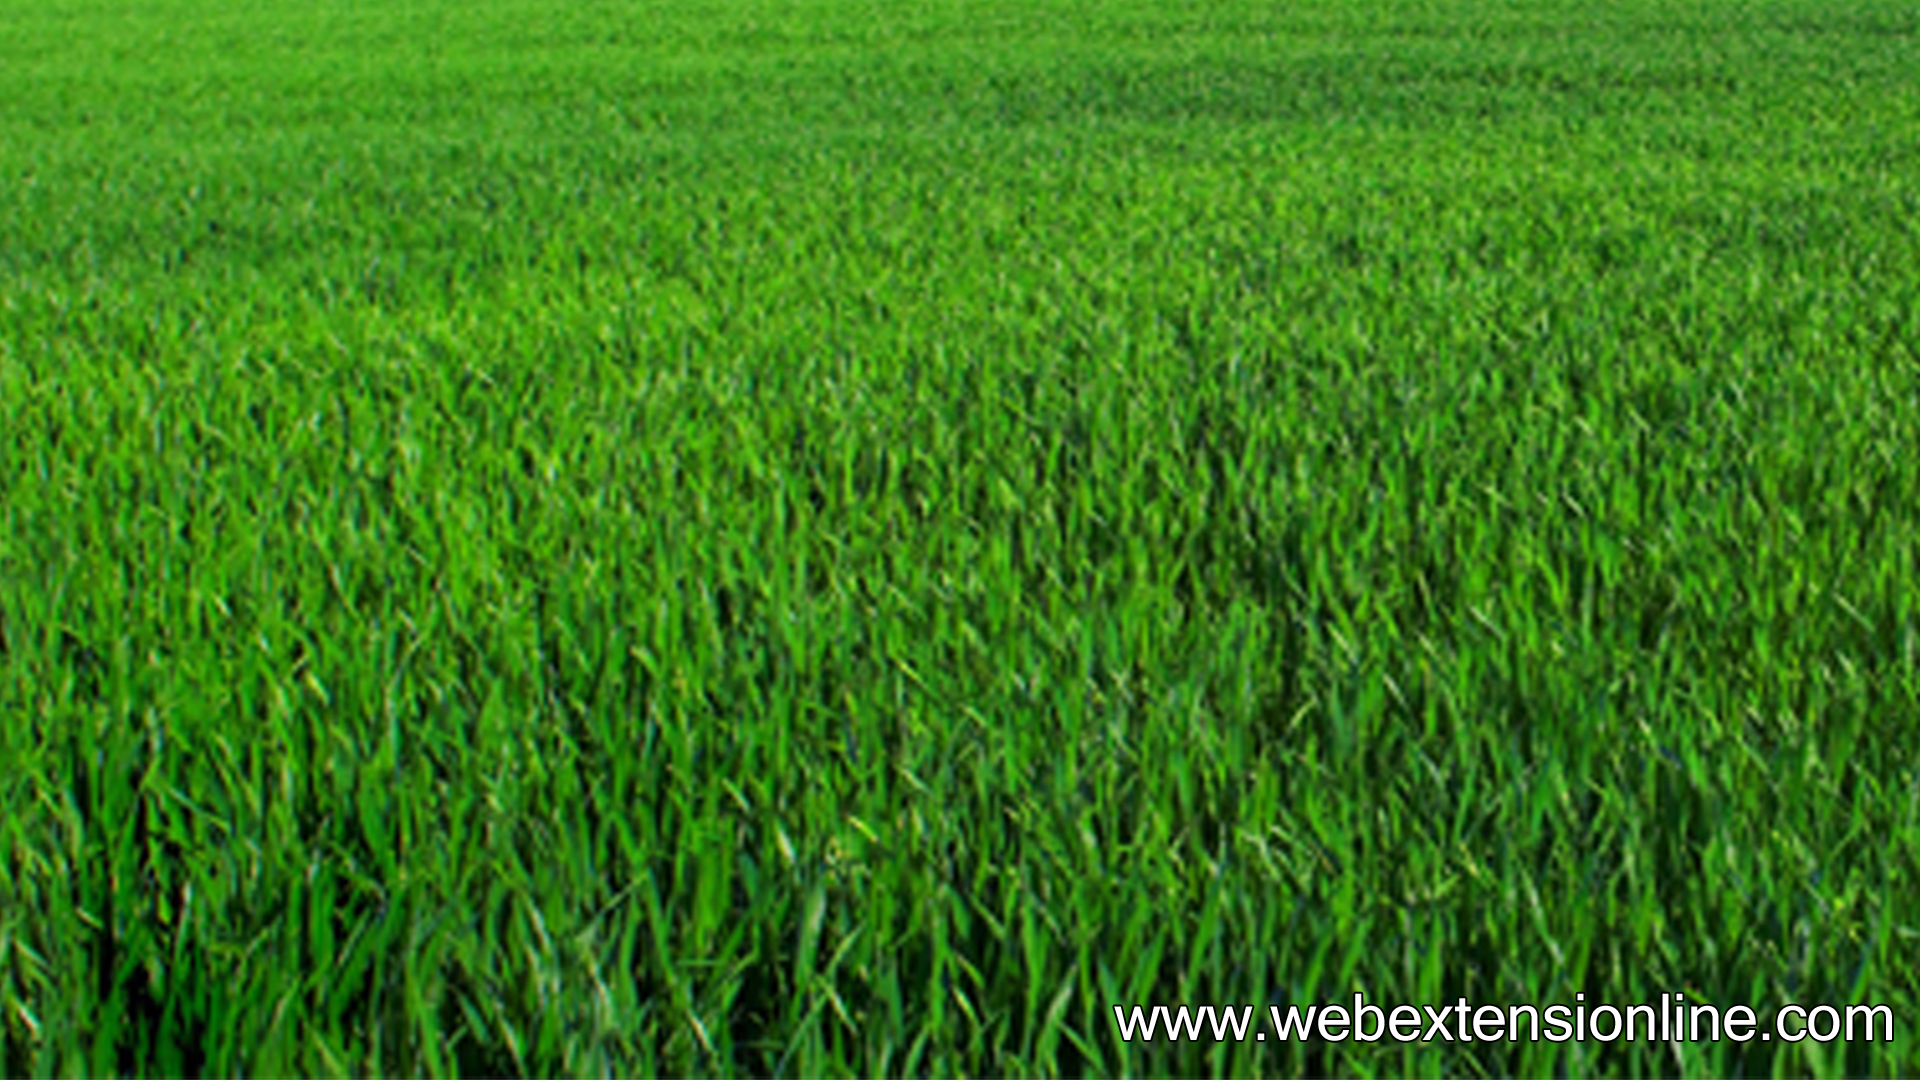 Free HD Natural Green Grass wallpaper webextensionline